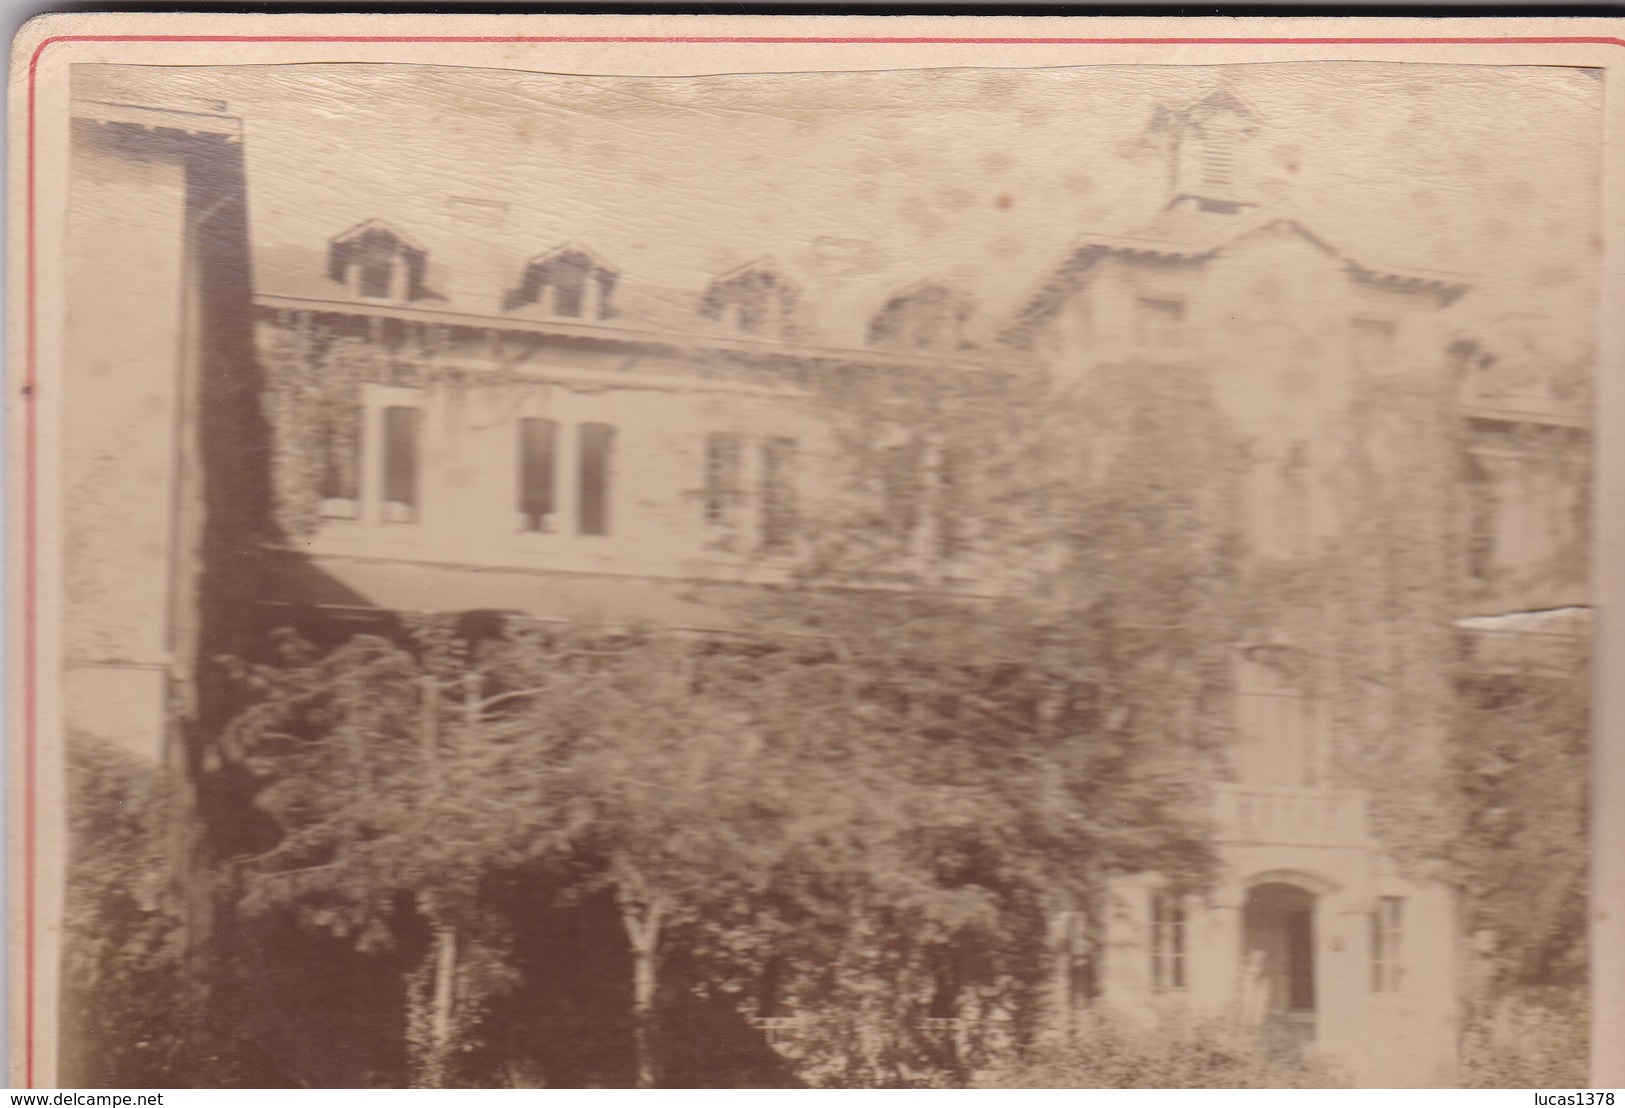 TRES BELLE PHOTO ECOLE NORMALE D INSTITUTRICES DE PAU  / PHOTO COLLEE SUR CARTON - FIN XIXe DEBUT XXe Siècle / - Antiche (ante 1900)